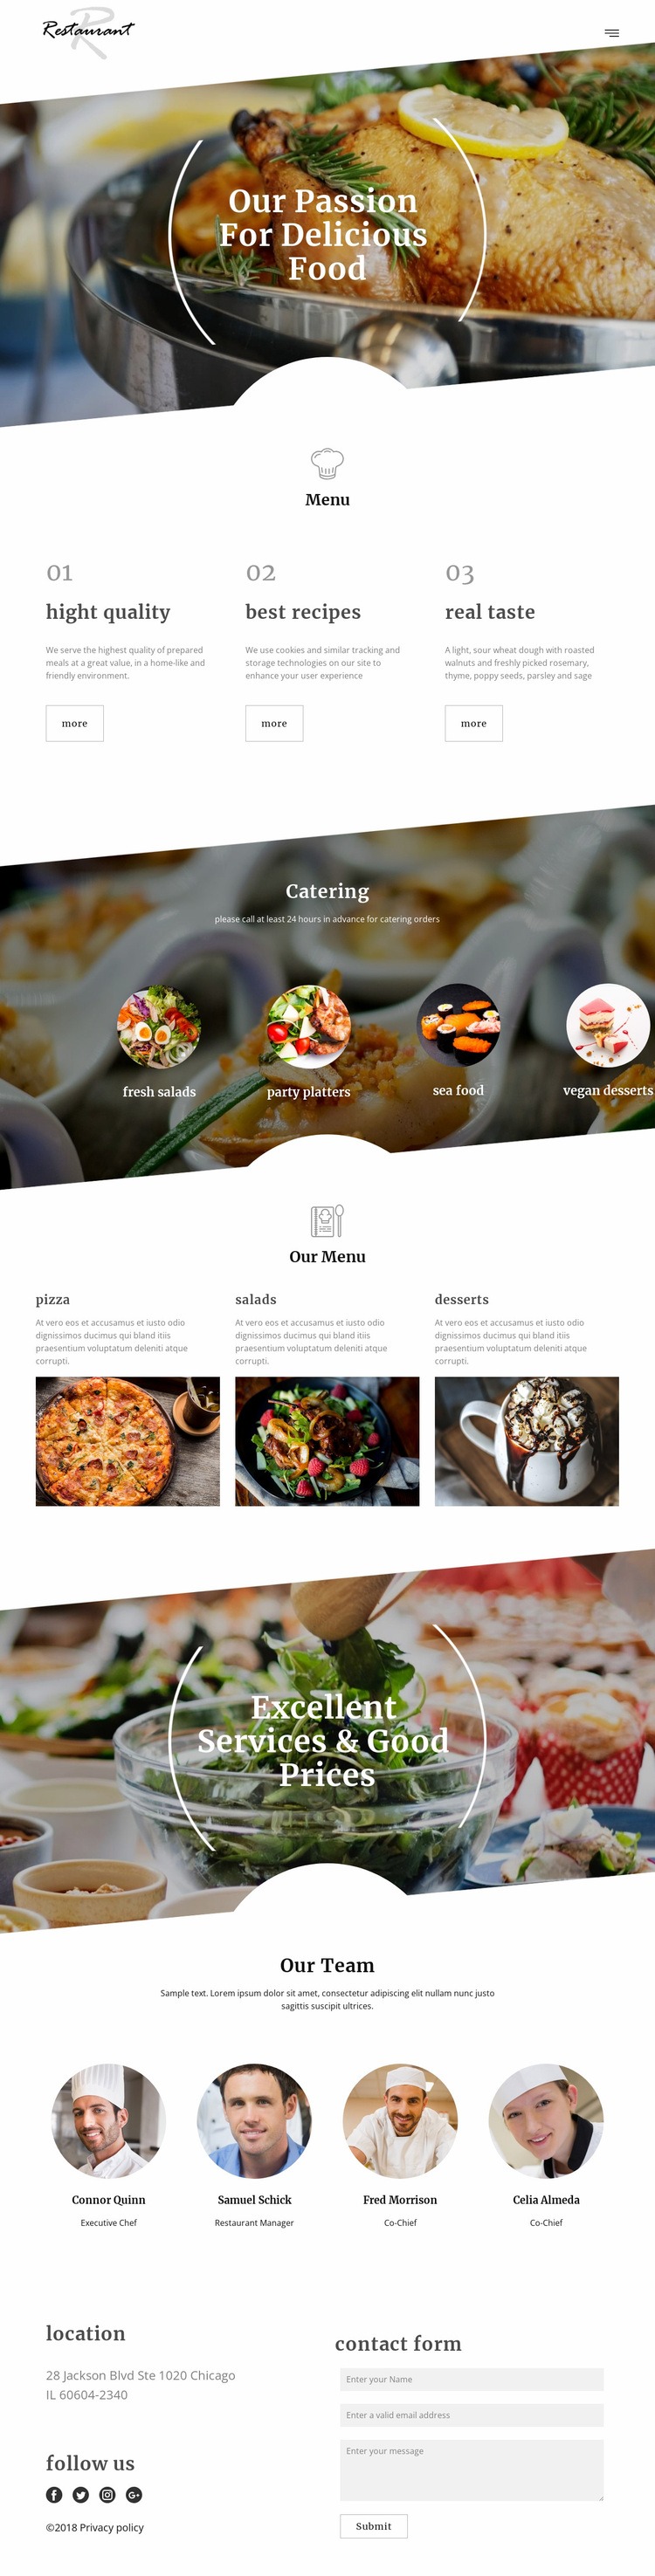 Executive chef recipes Website Design